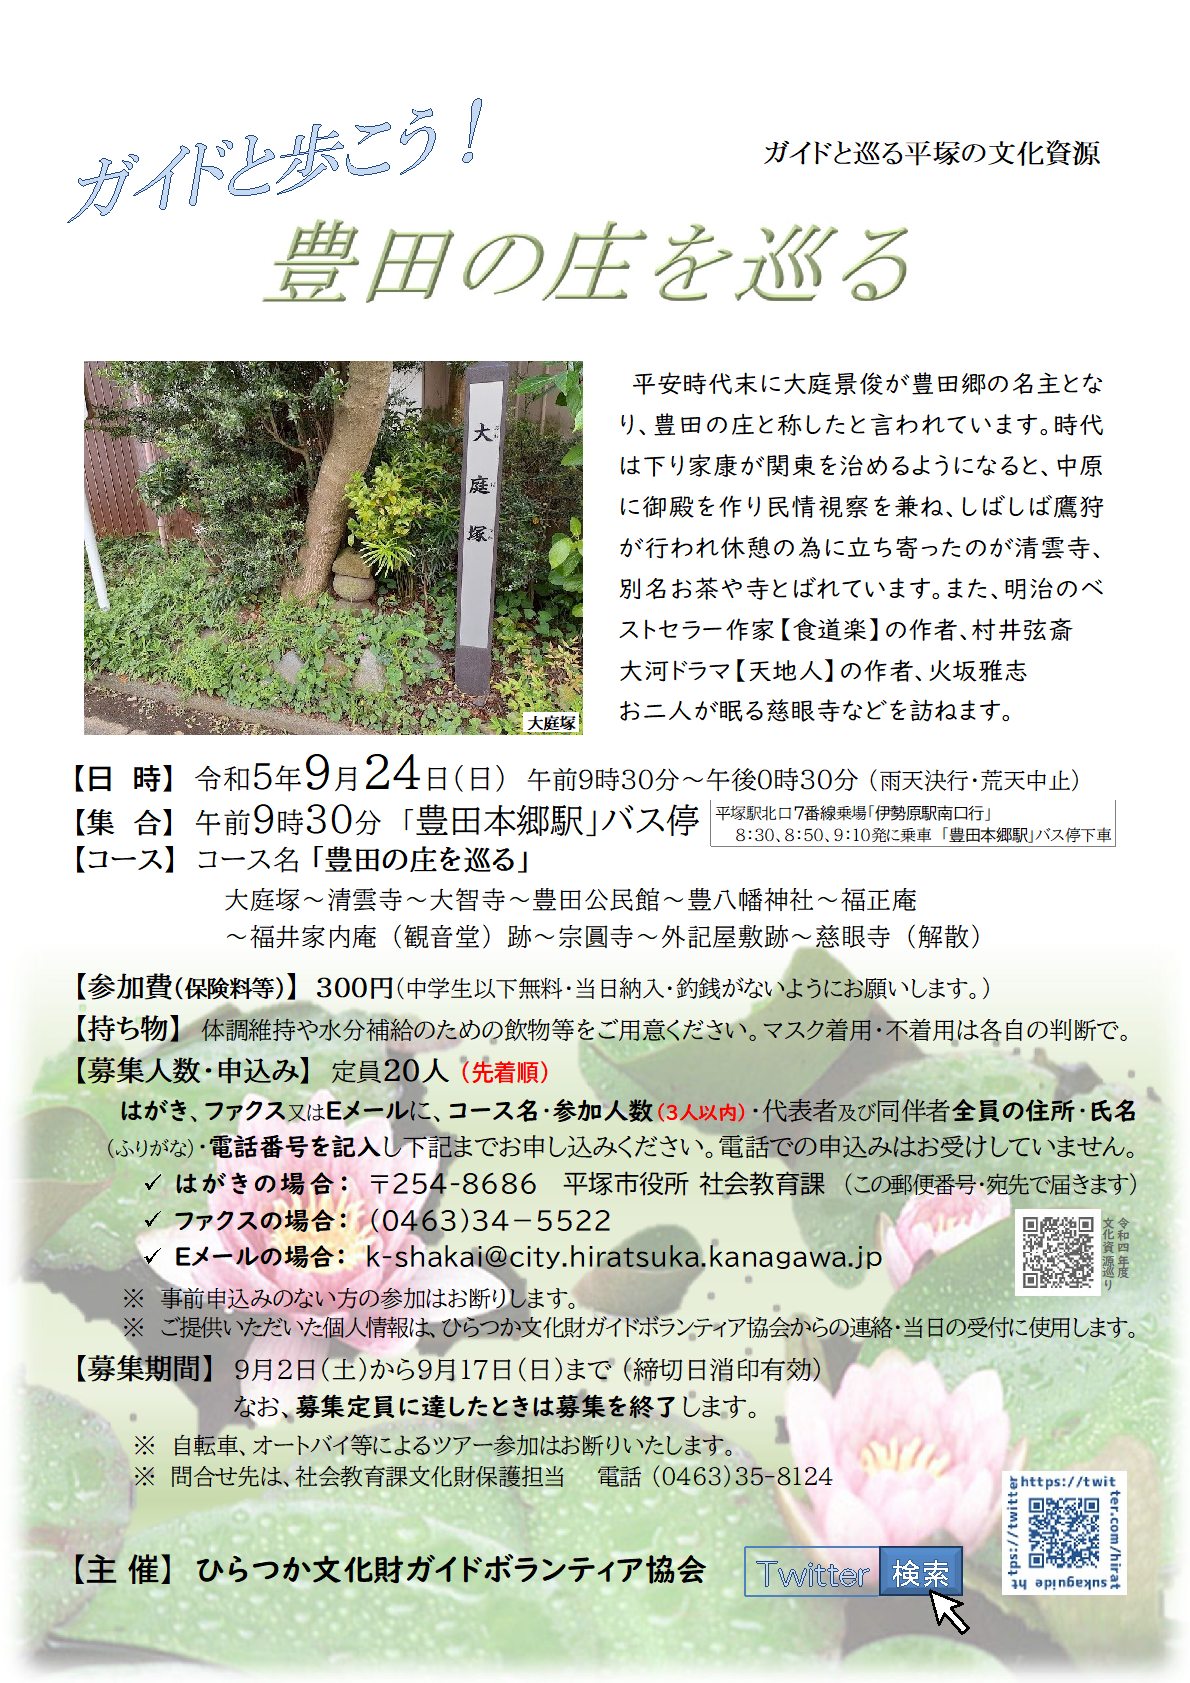 ガイドと巡る平塚の文化資源『豊田の庄を巡る』コース、9月24日 日曜日開催、申込先着順20人定員。